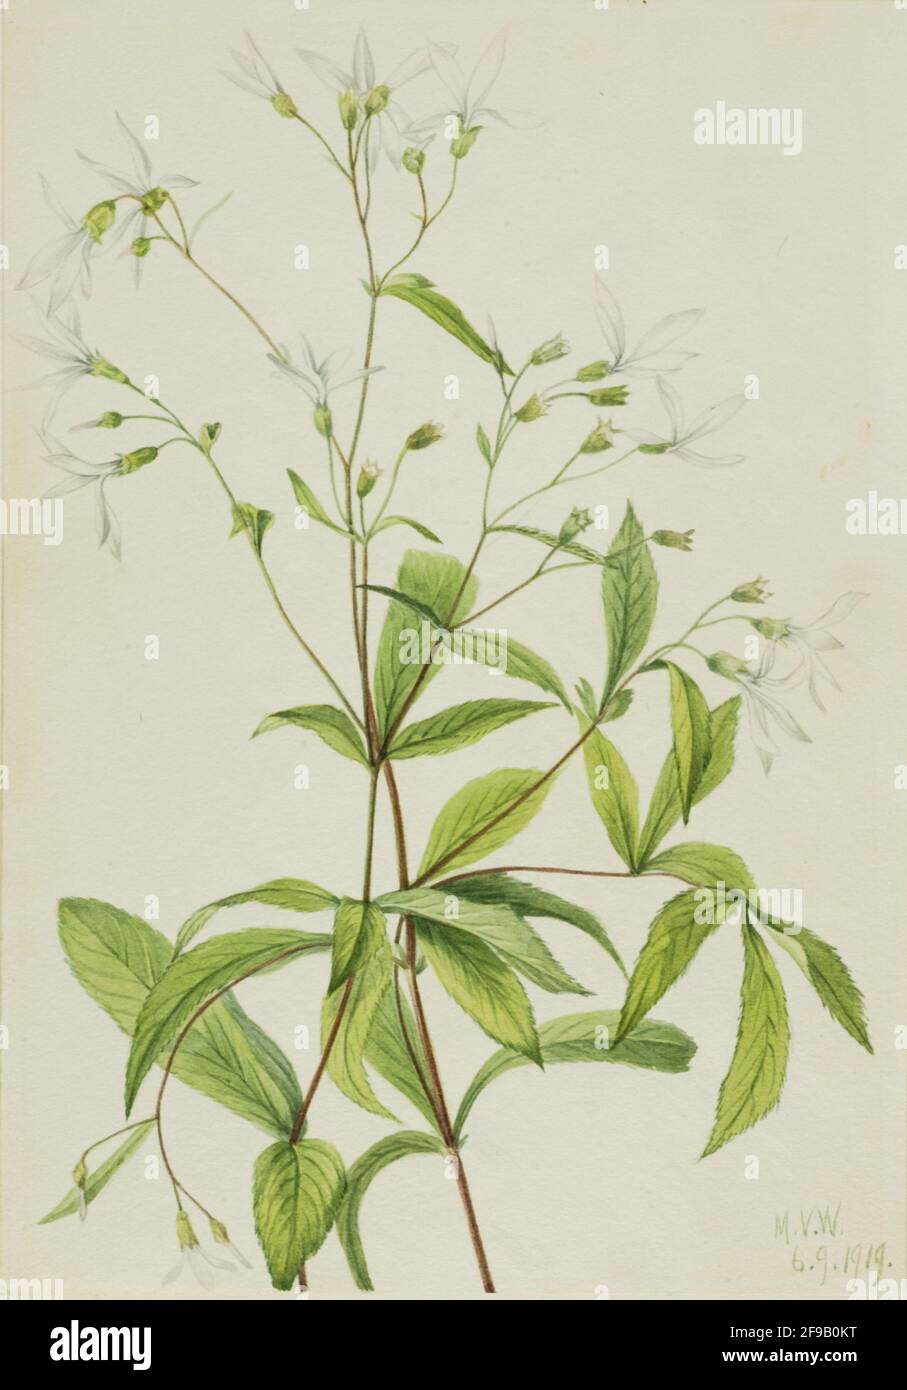 Bowmansroot (Porteranthus trifoliatus), 1919. Stock Photo